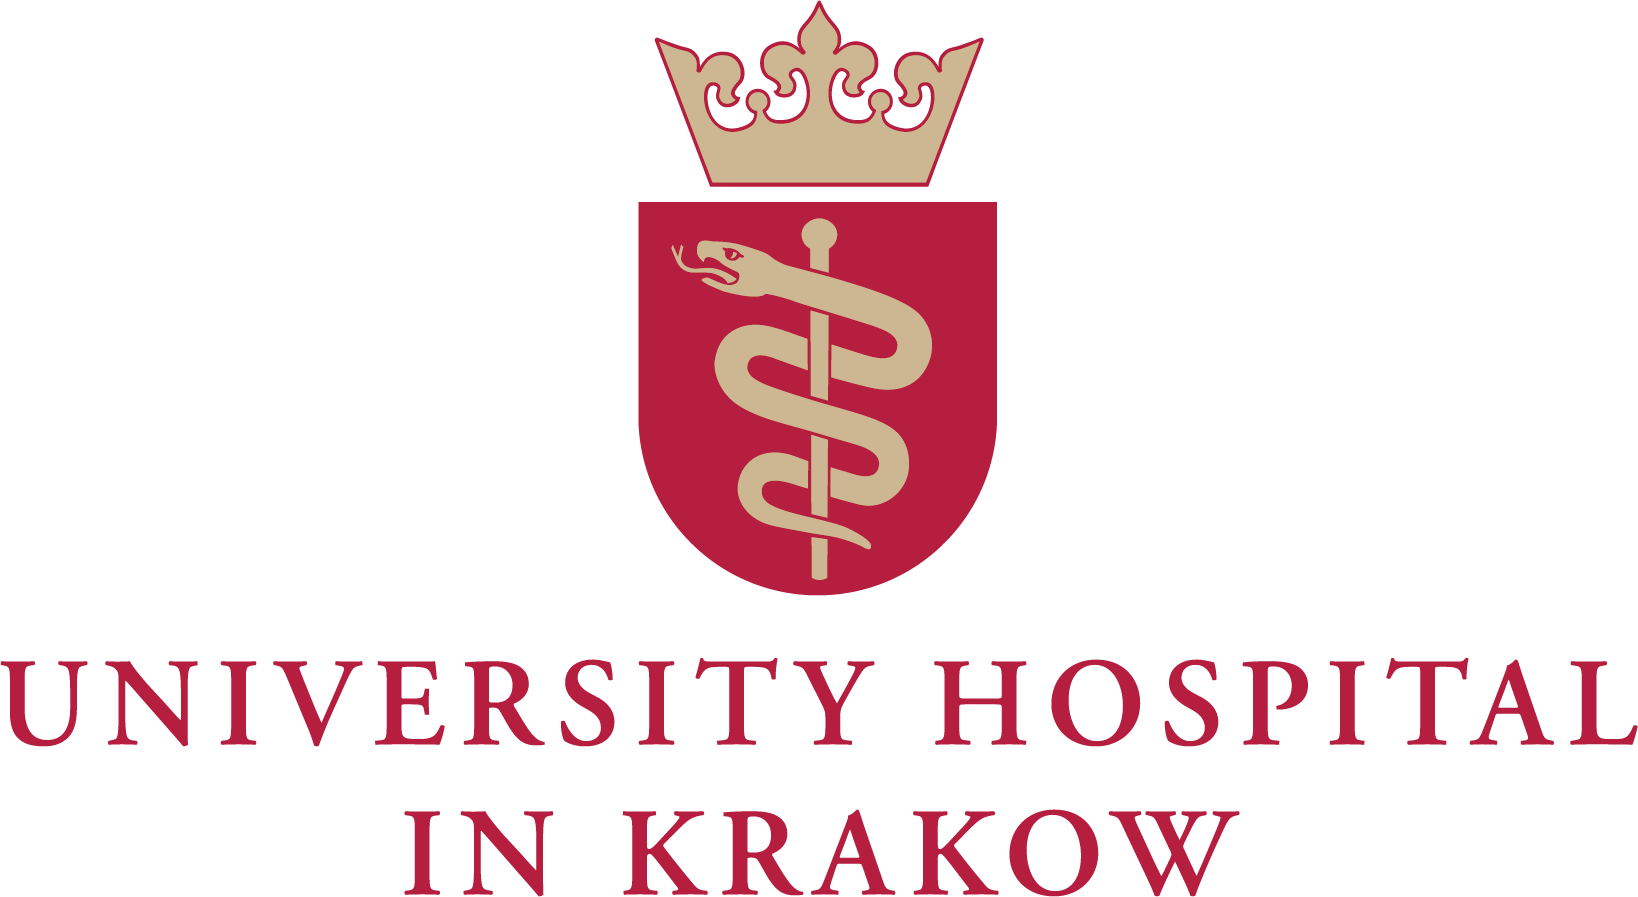 CMMS for hospitals - Appmedica - University Hospital in Krakow